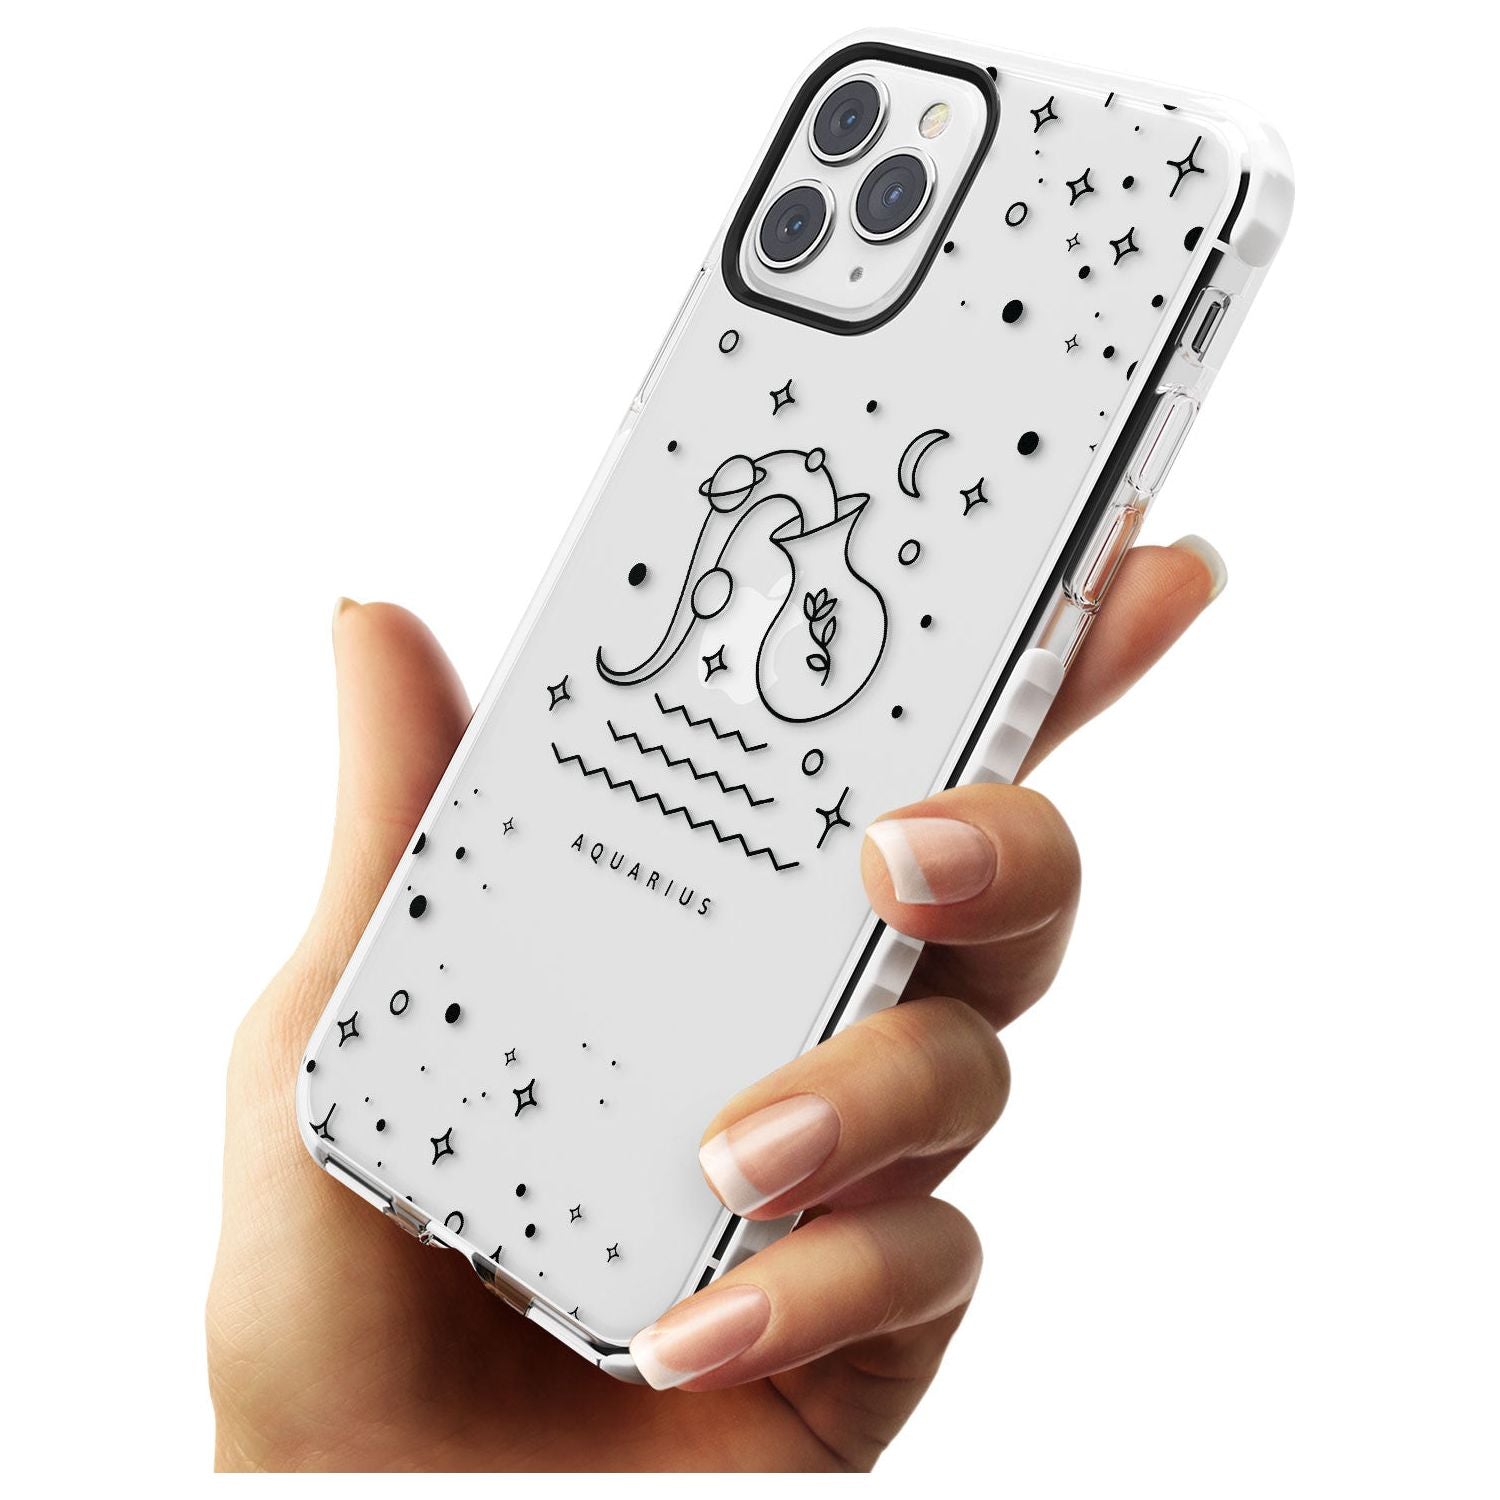 Aquarius Emblem - Transparent Design Impact Phone Case for iPhone 11 Pro Max